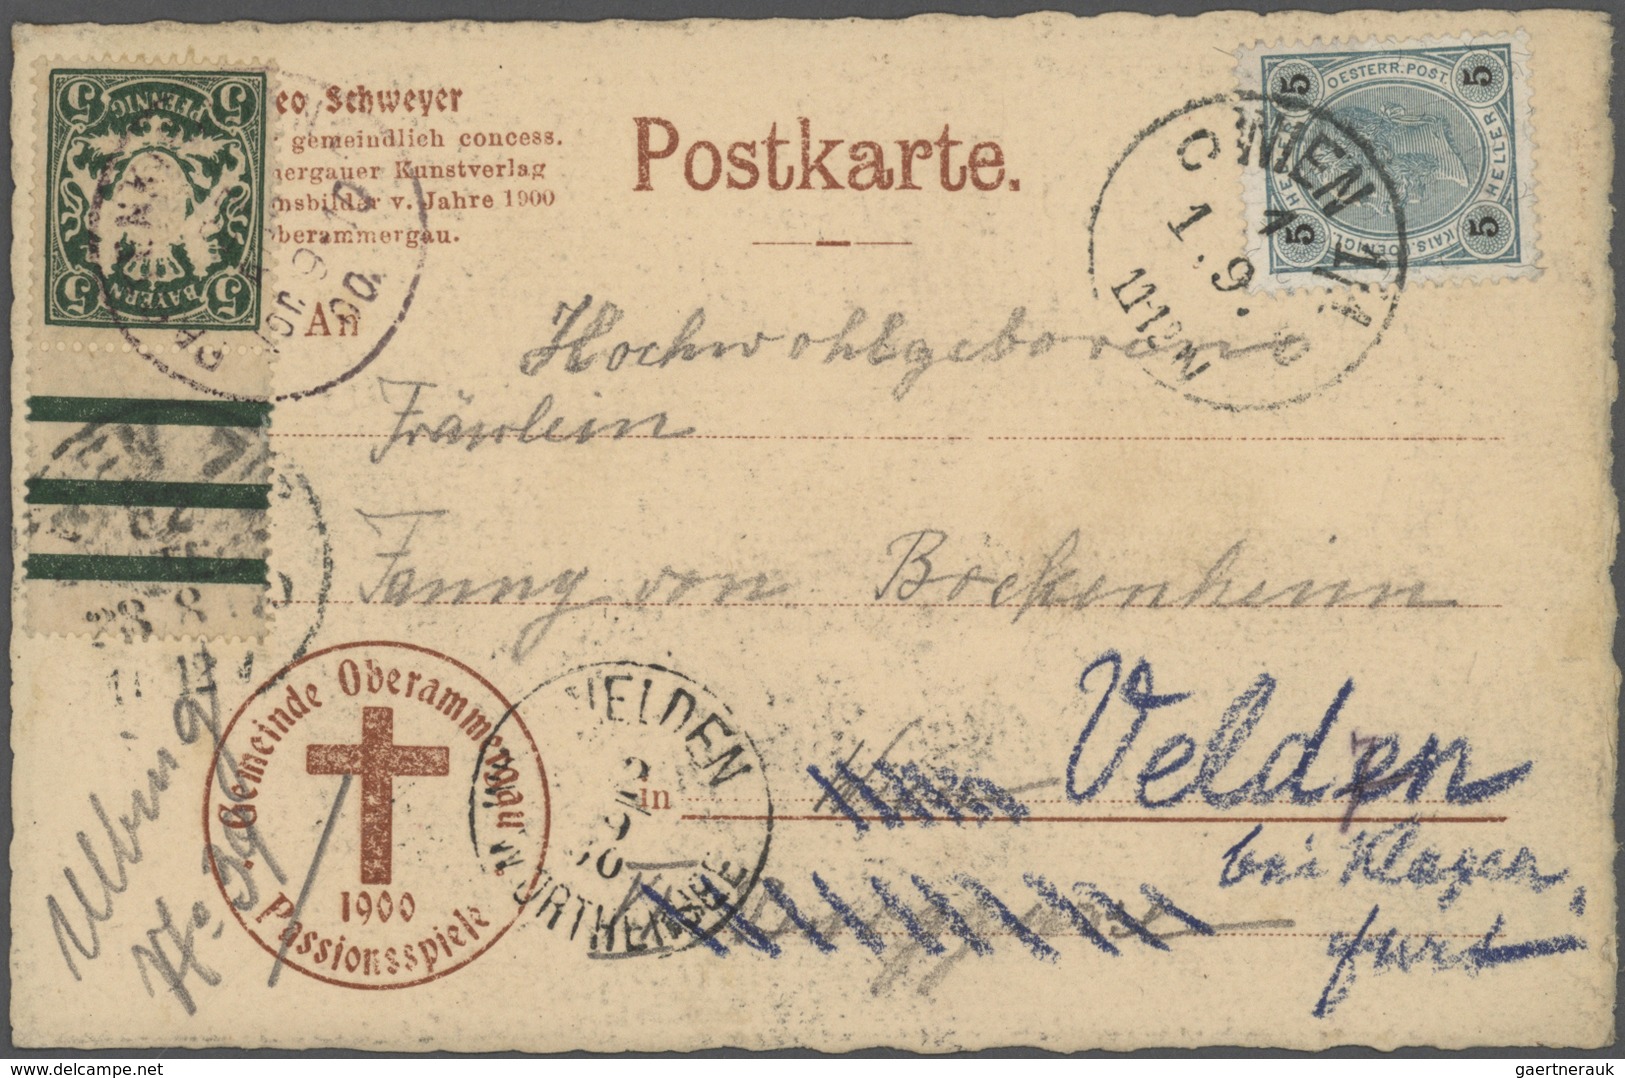 31201 Bayern - Marken und Briefe: 1875/1920 Schöner Posten von 37 un(ter)frankierten Bayern-Belegen mit NA